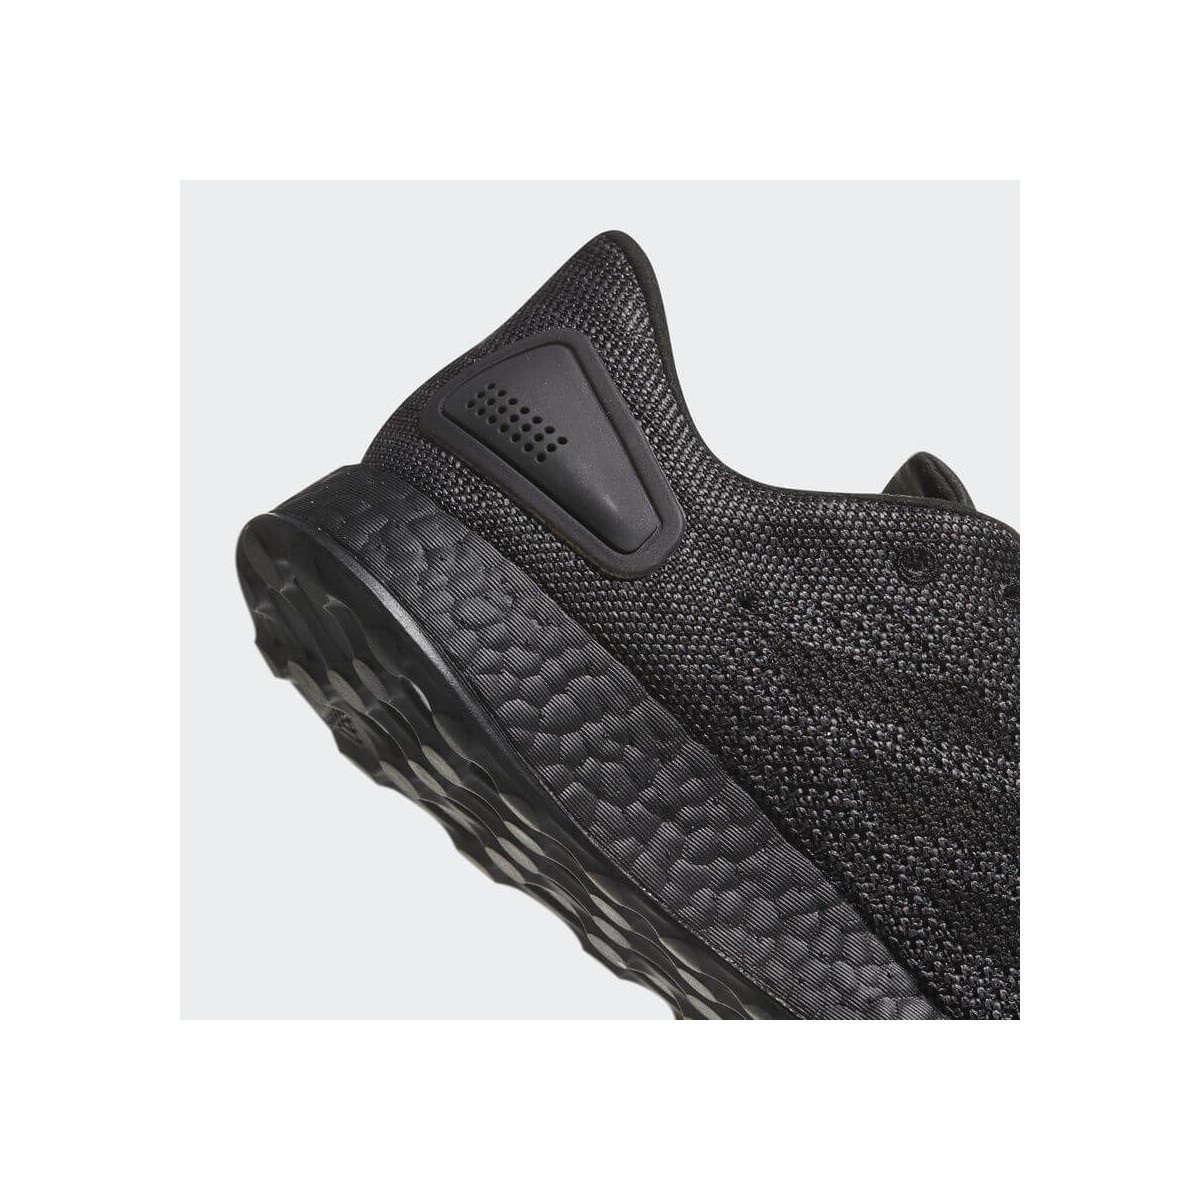 Adidas PureBoost LTD Core Black